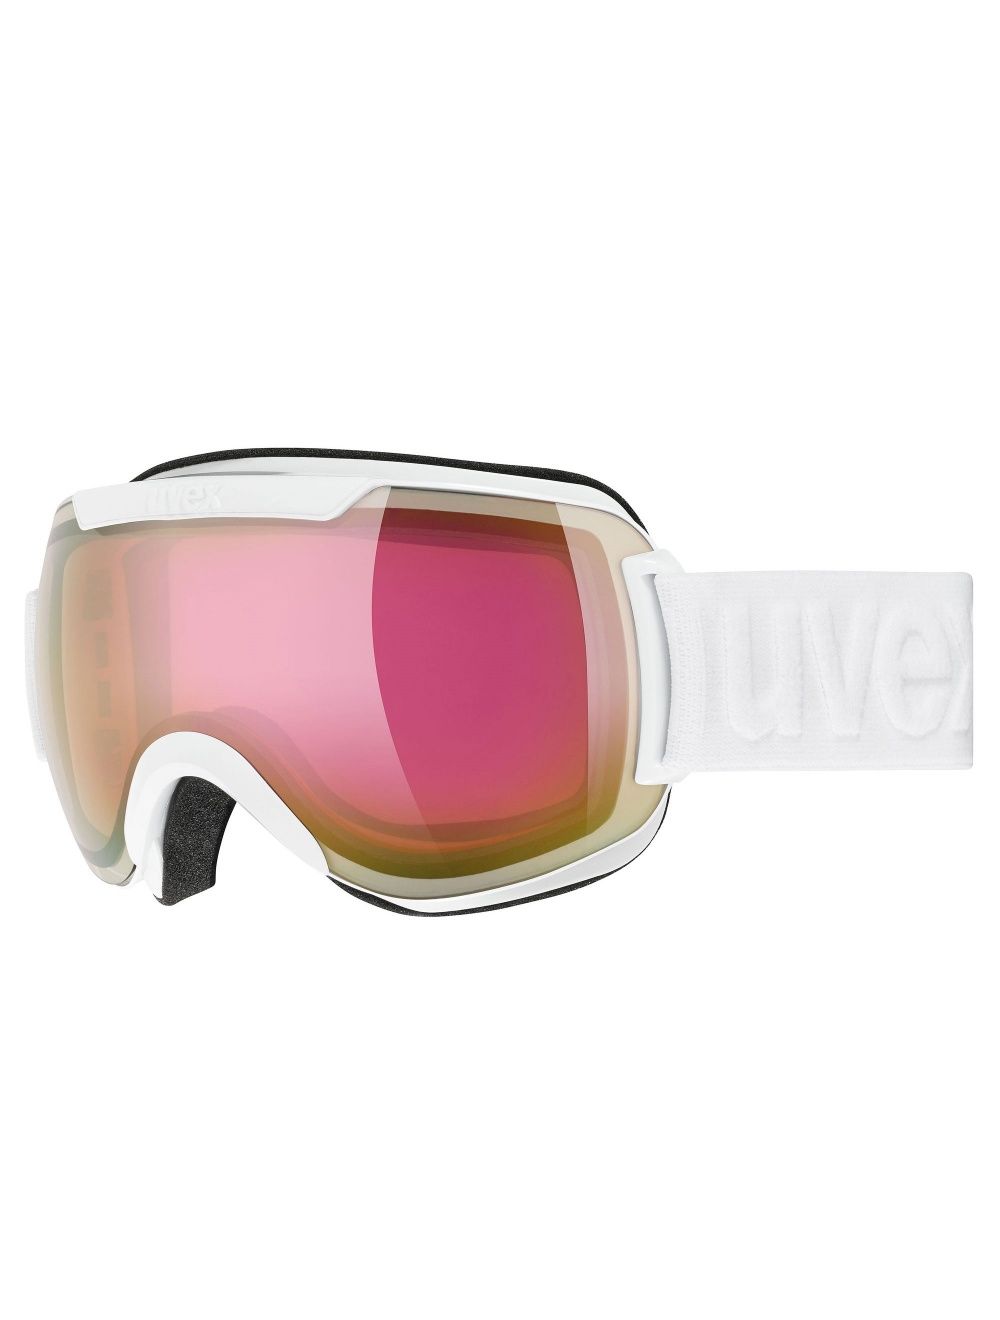 UVEX Gogle narciarskie DOWNHILL 2000 FM 1230 white/pink rose